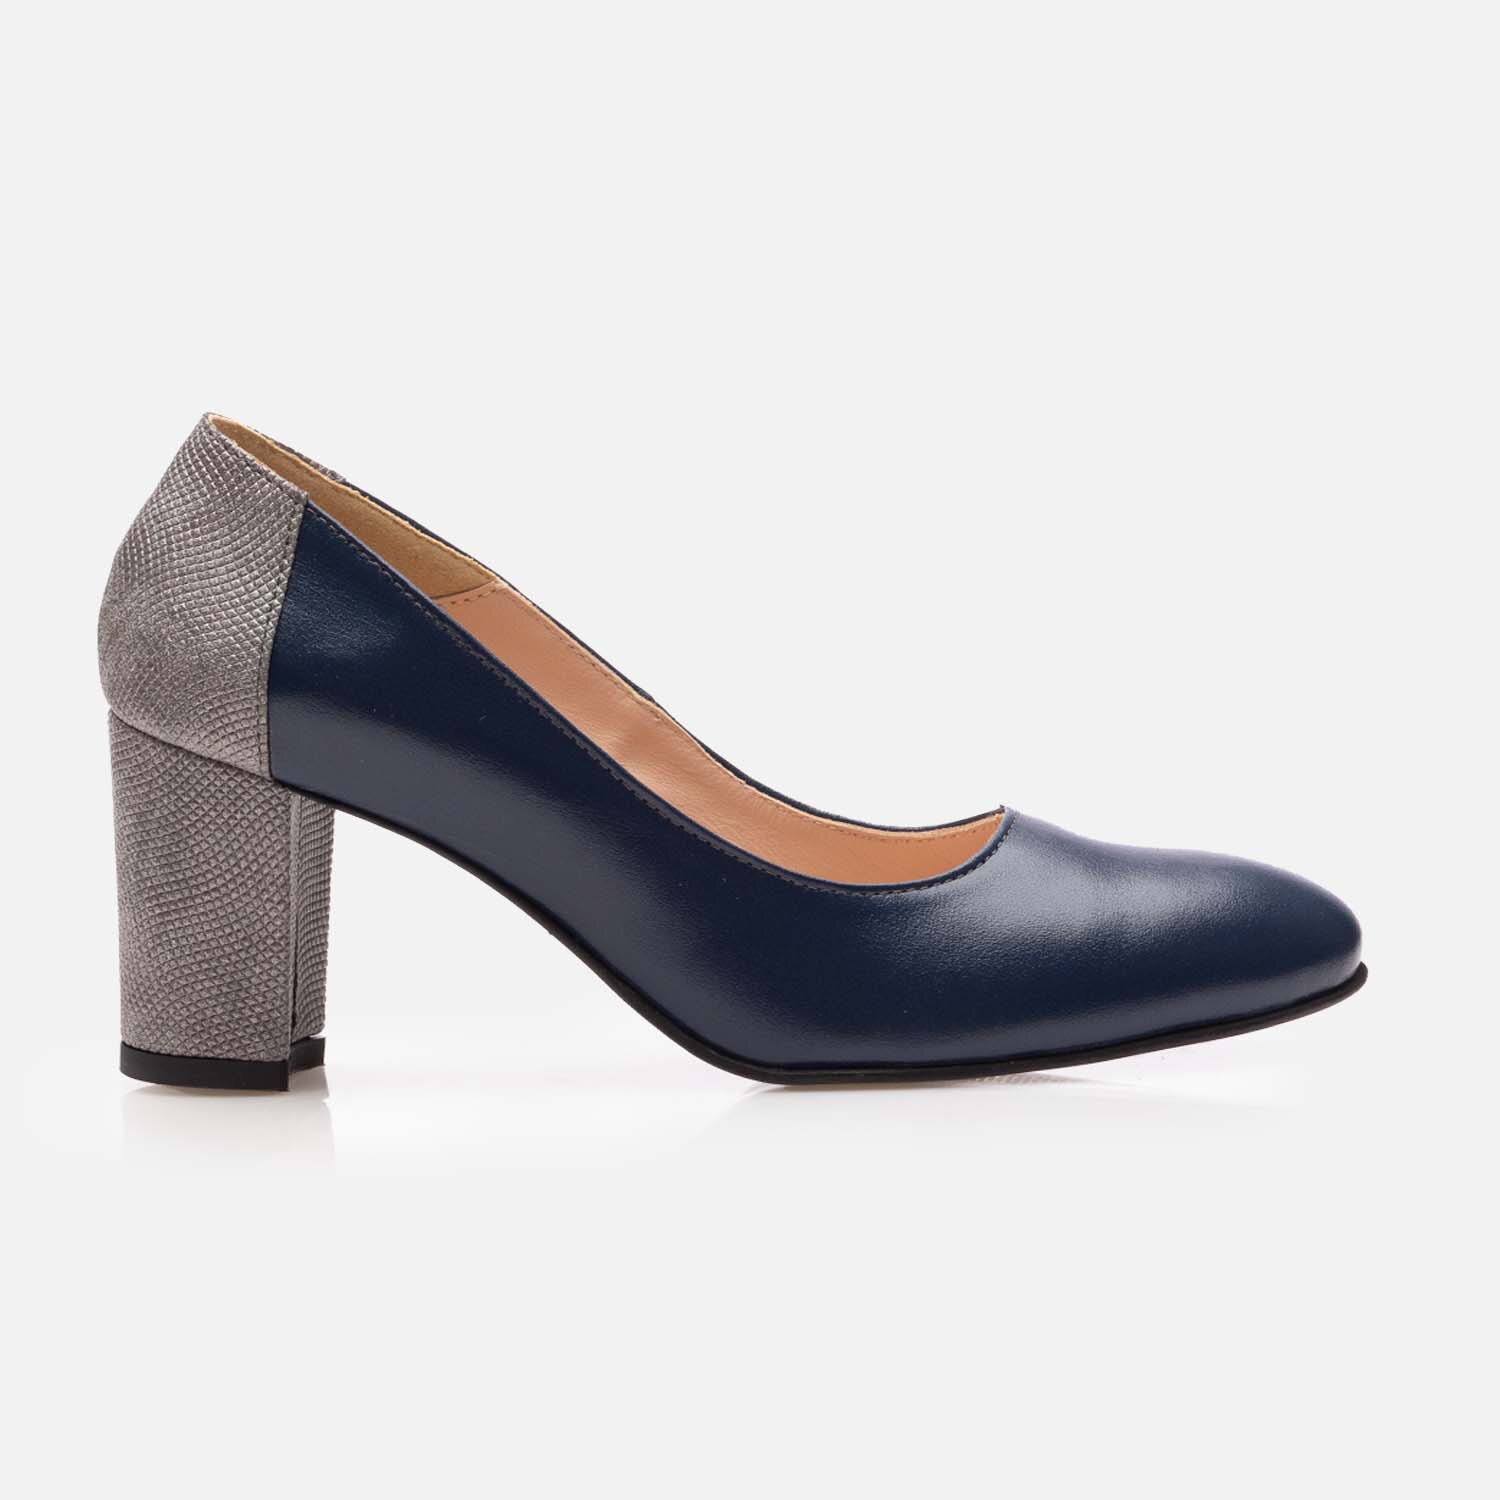 Pantofi eleganți damă din piele naturală - 174 Blue + Gri Box